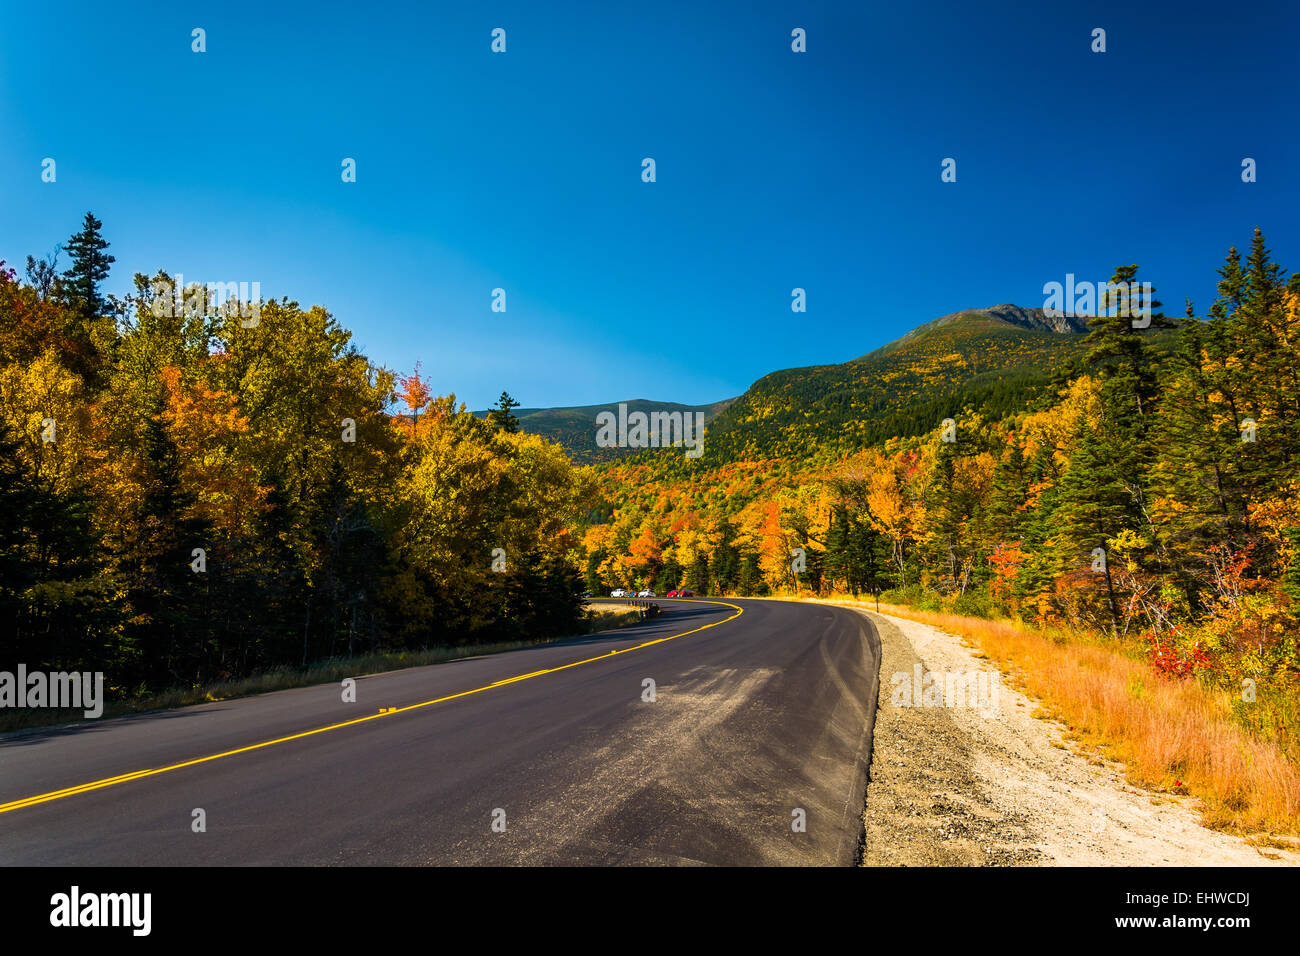 La couleur en automne le long d'une route dans la région de White Mountain National Forest, New Hampshire. Banque D'Images